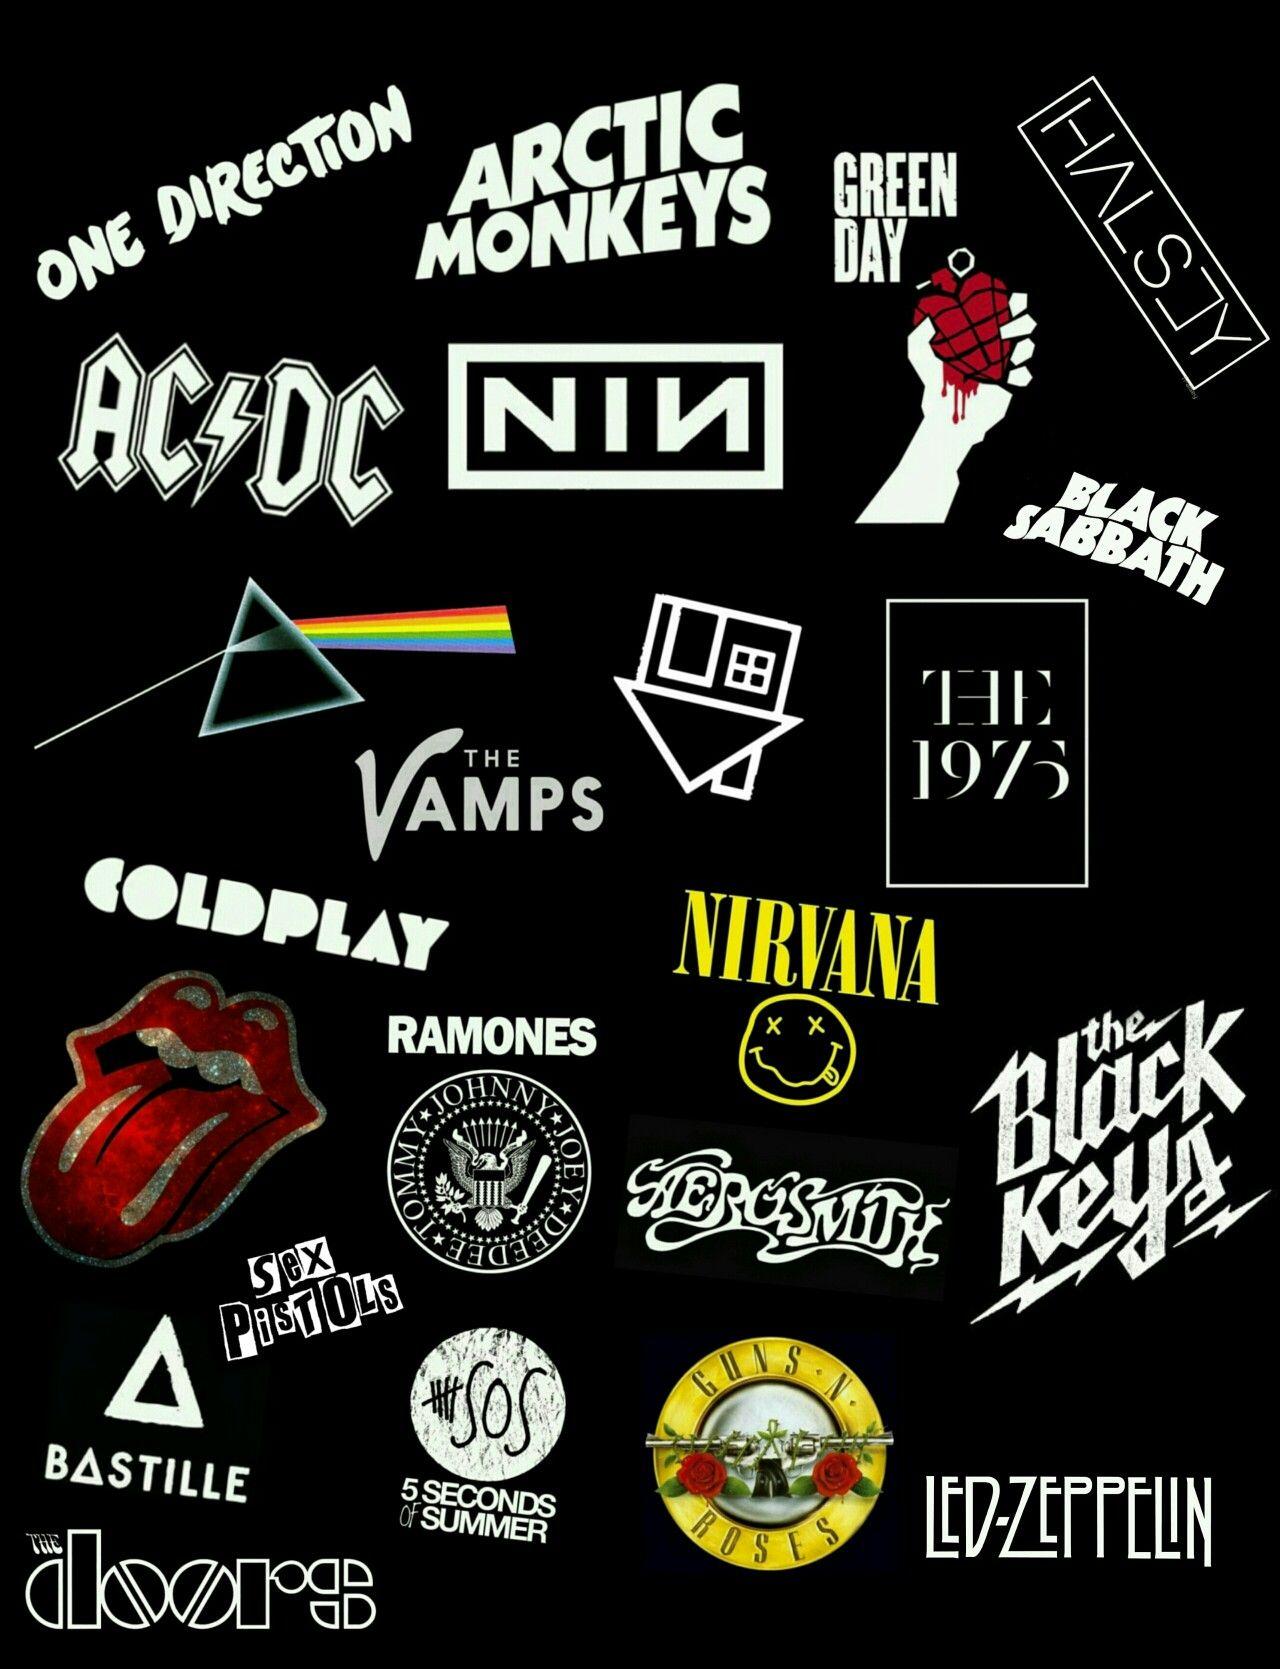 Band logos collage. Band logos collage, Band logos, Band